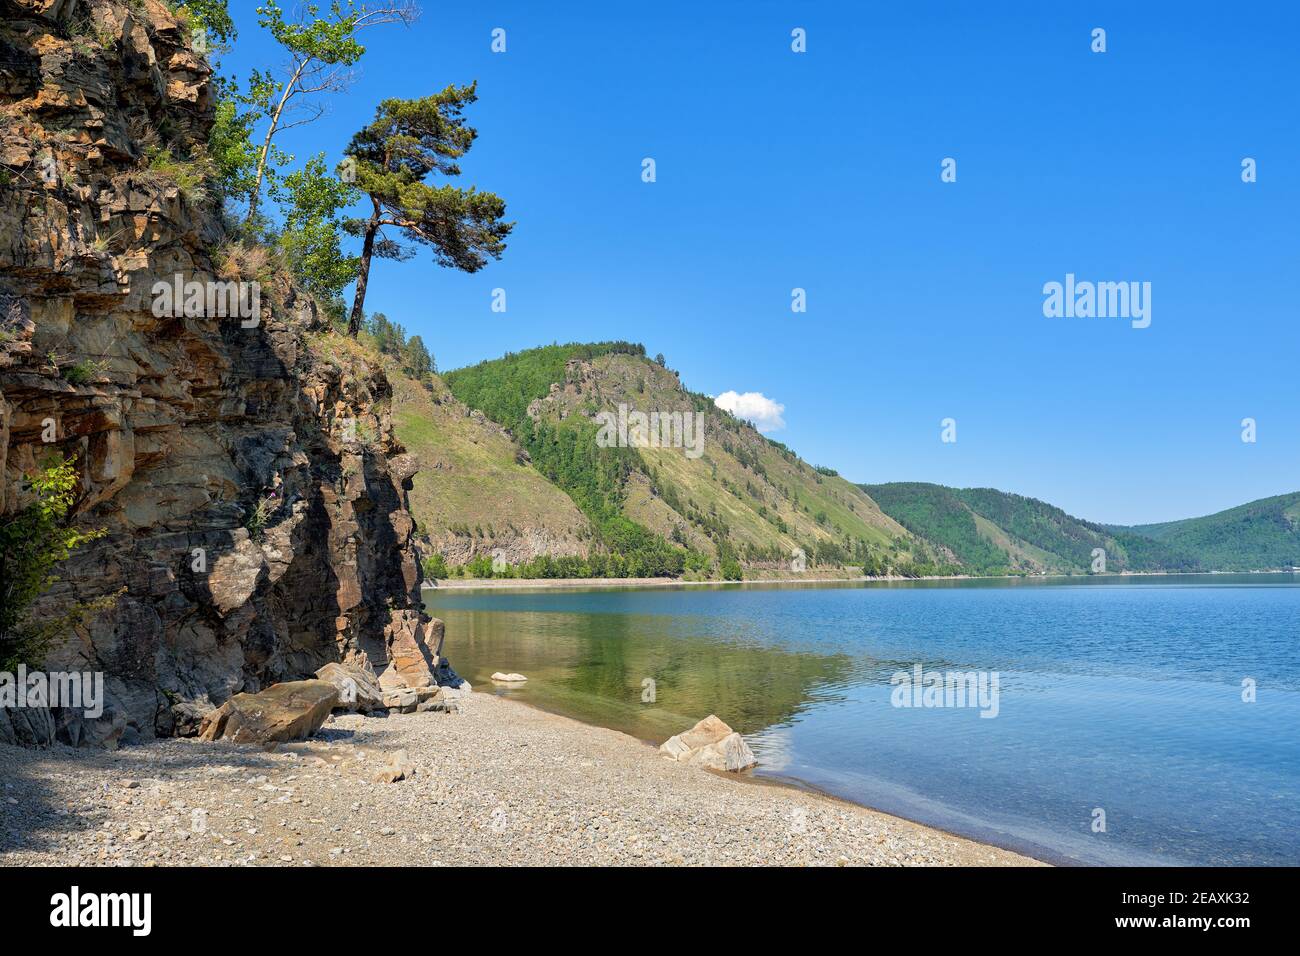 Paysage de Baikal par une journée d'été ensoleillée. Un pin pendu sur le bord de la falaise au-dessus de l'eau. Région d'Irkoutsk. Russie Banque D'Images